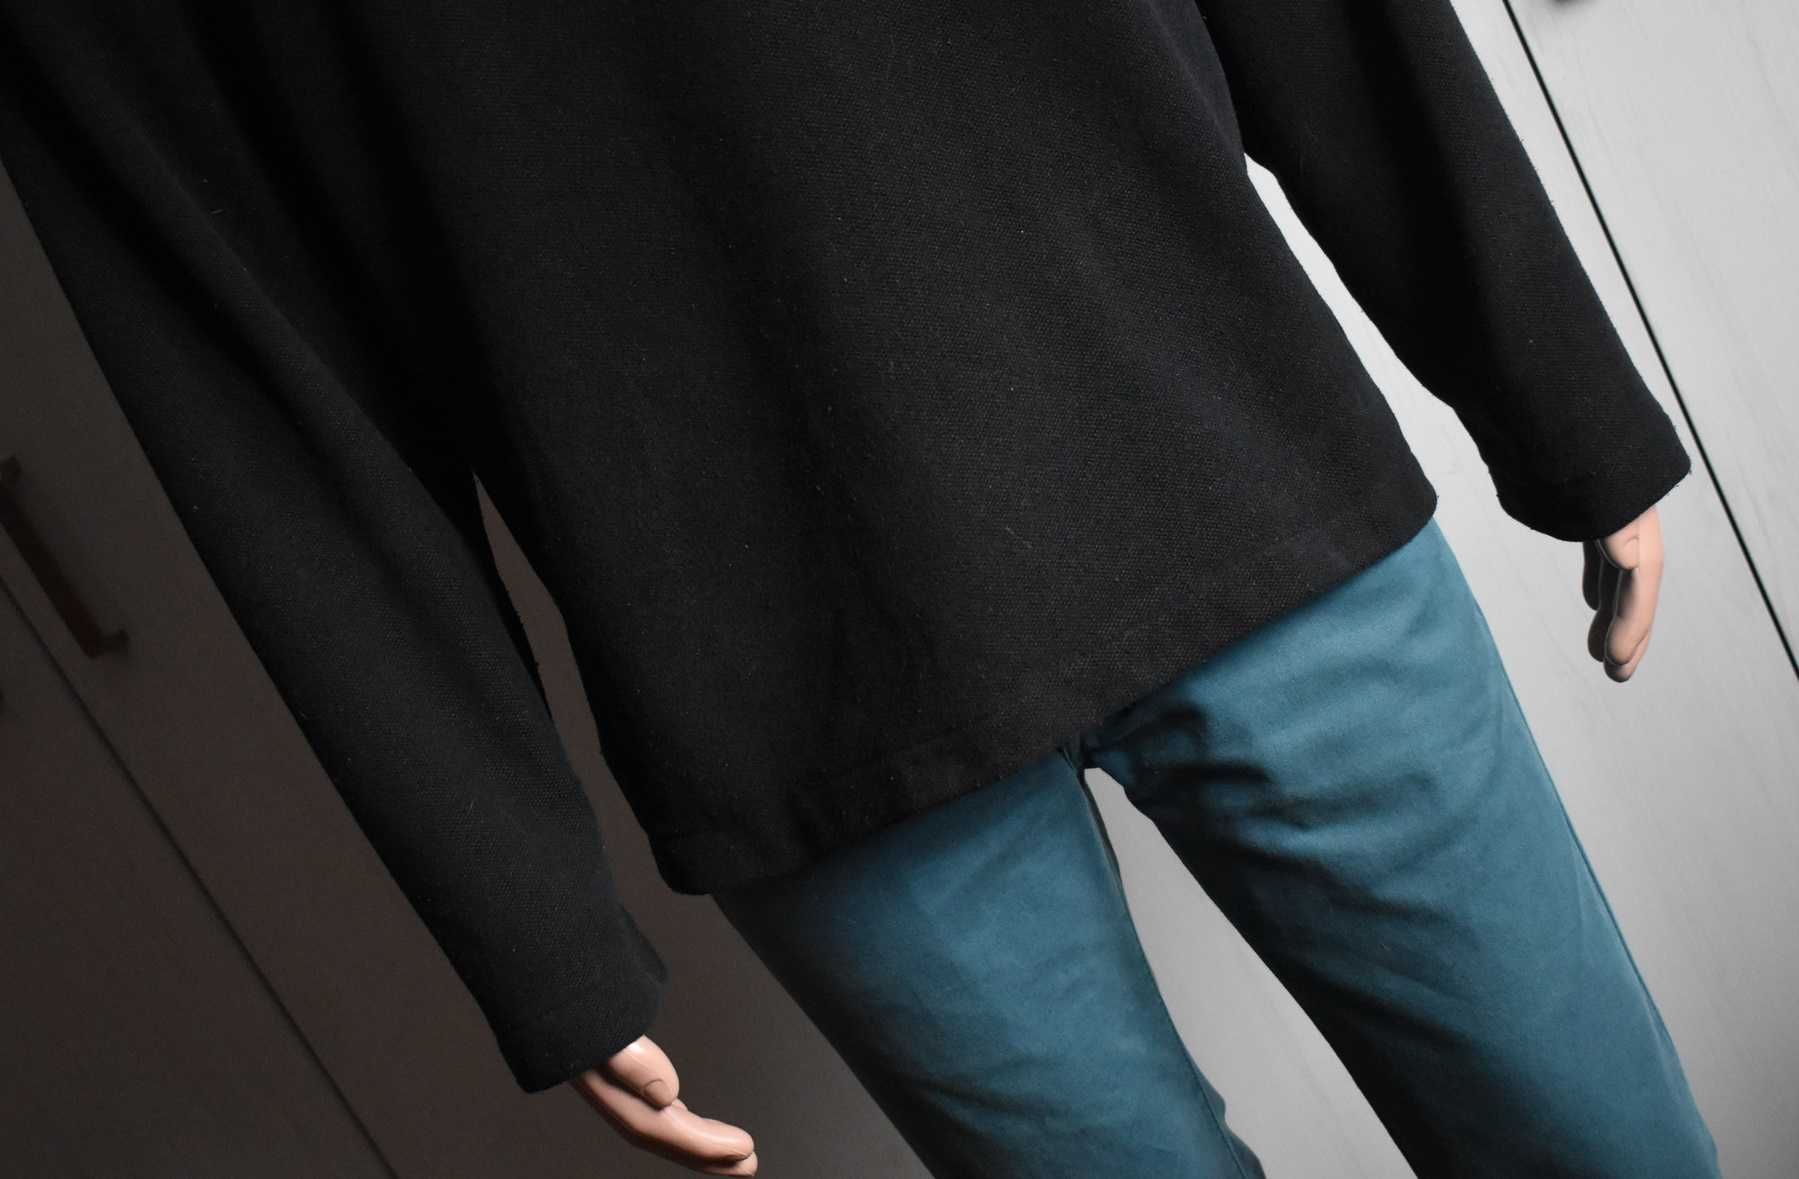 Bluza L XL prosta czarna sweatshirt The North Face męska sportowa